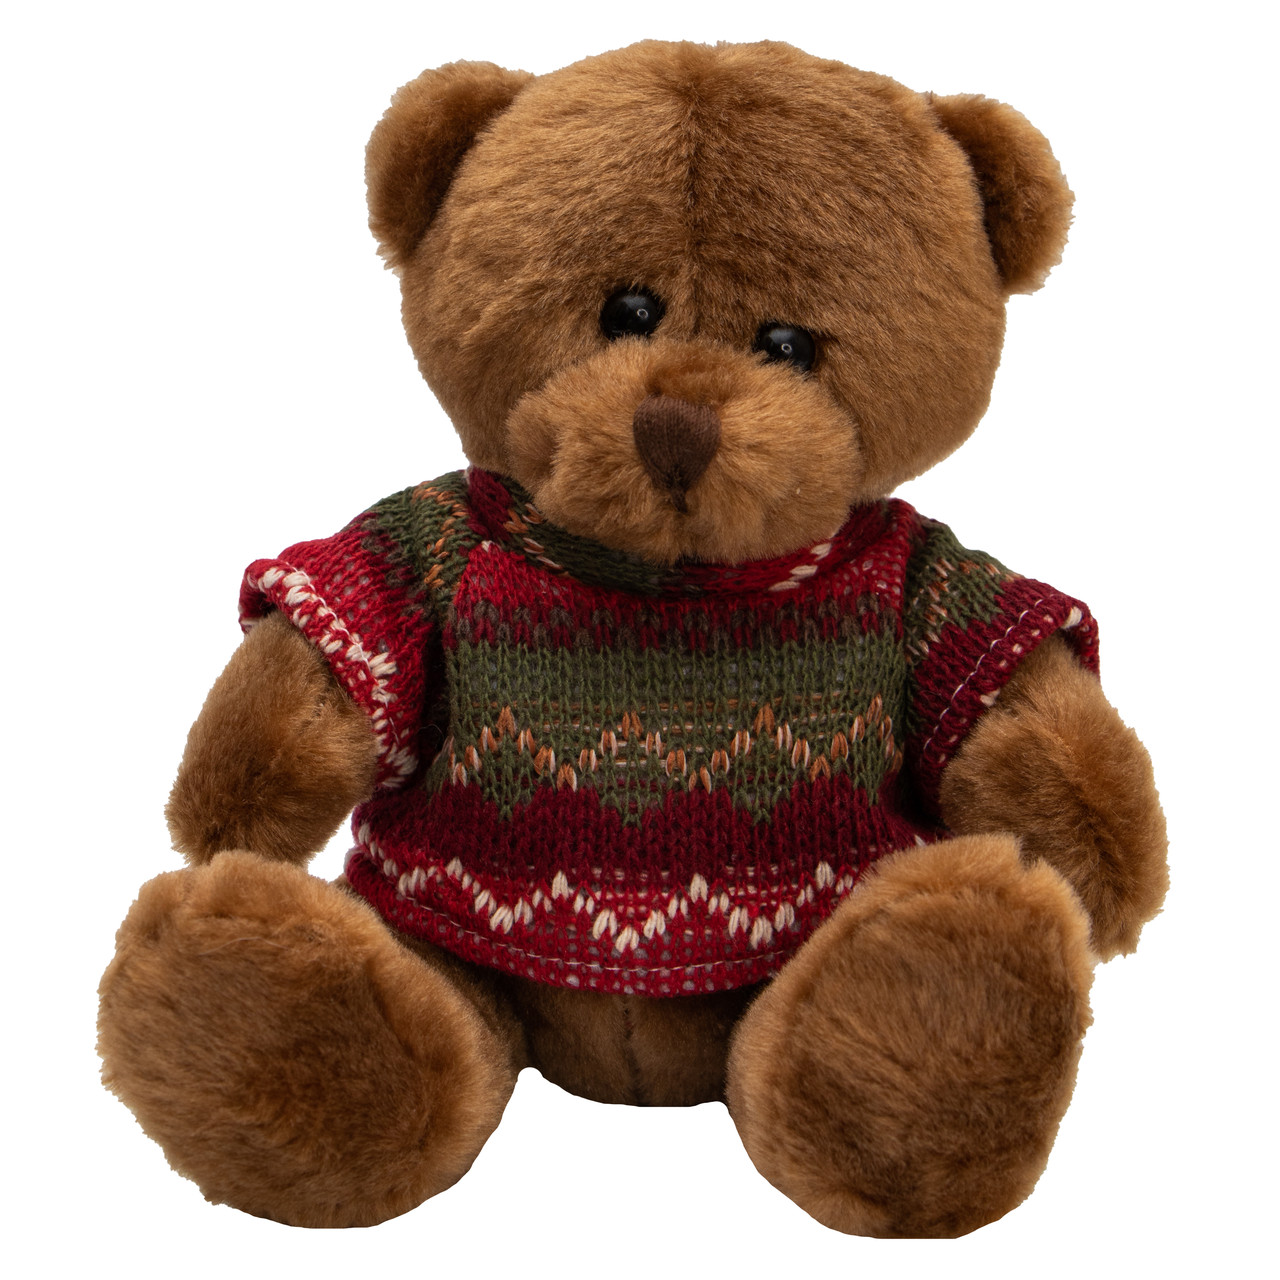 М'яка іграшка - ведмедик у светрі, 15 см, коричневий, плюш (395049)